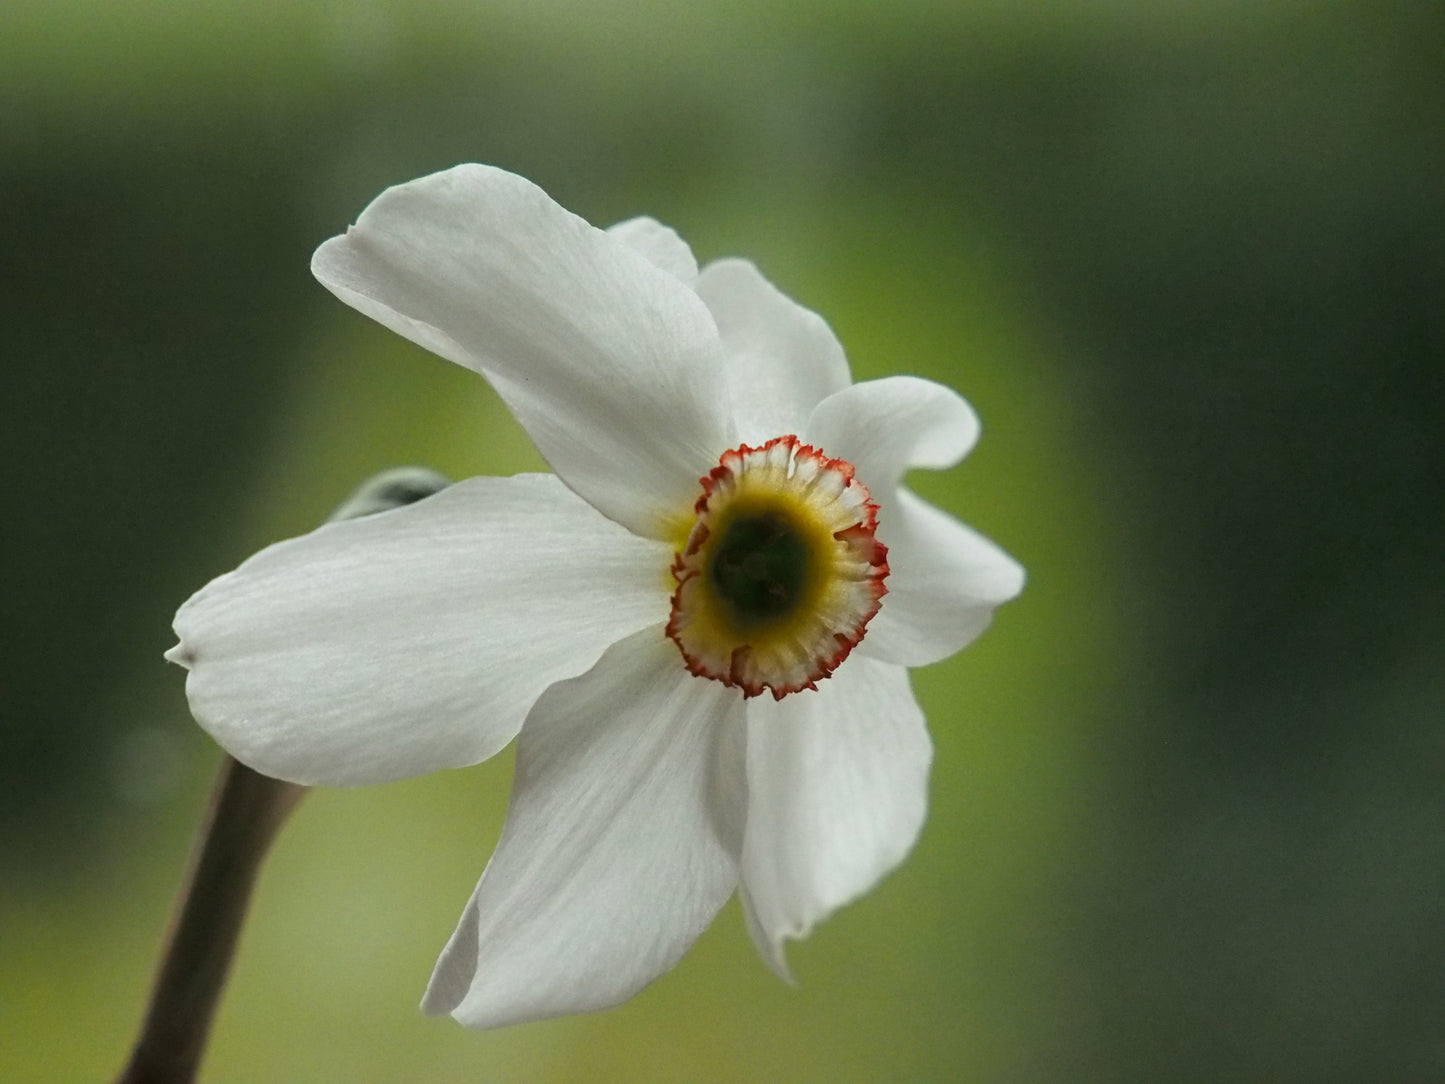 Daffodil 'Recurvus'